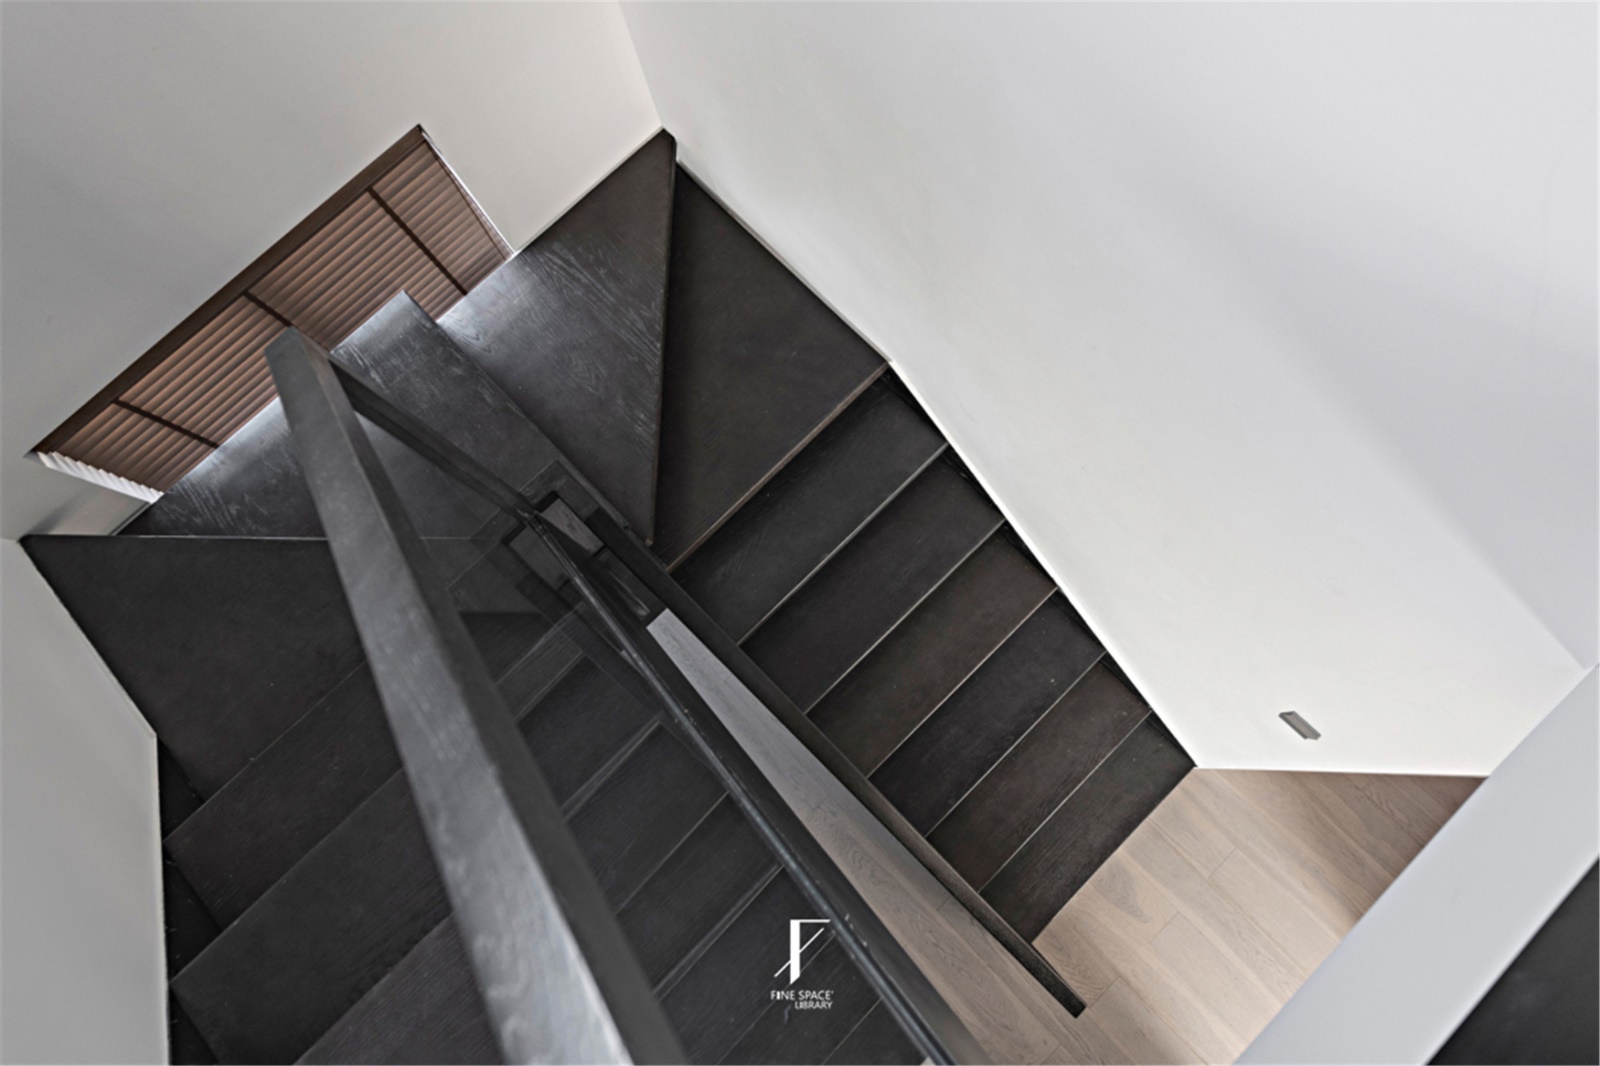 35 除木板的厚度带来不同脚感、与抓纹深浅的防滑性考究...设计师认为，空间自身与楼梯已自带几何美学，无需再度“设计与雕琢”。.jpg